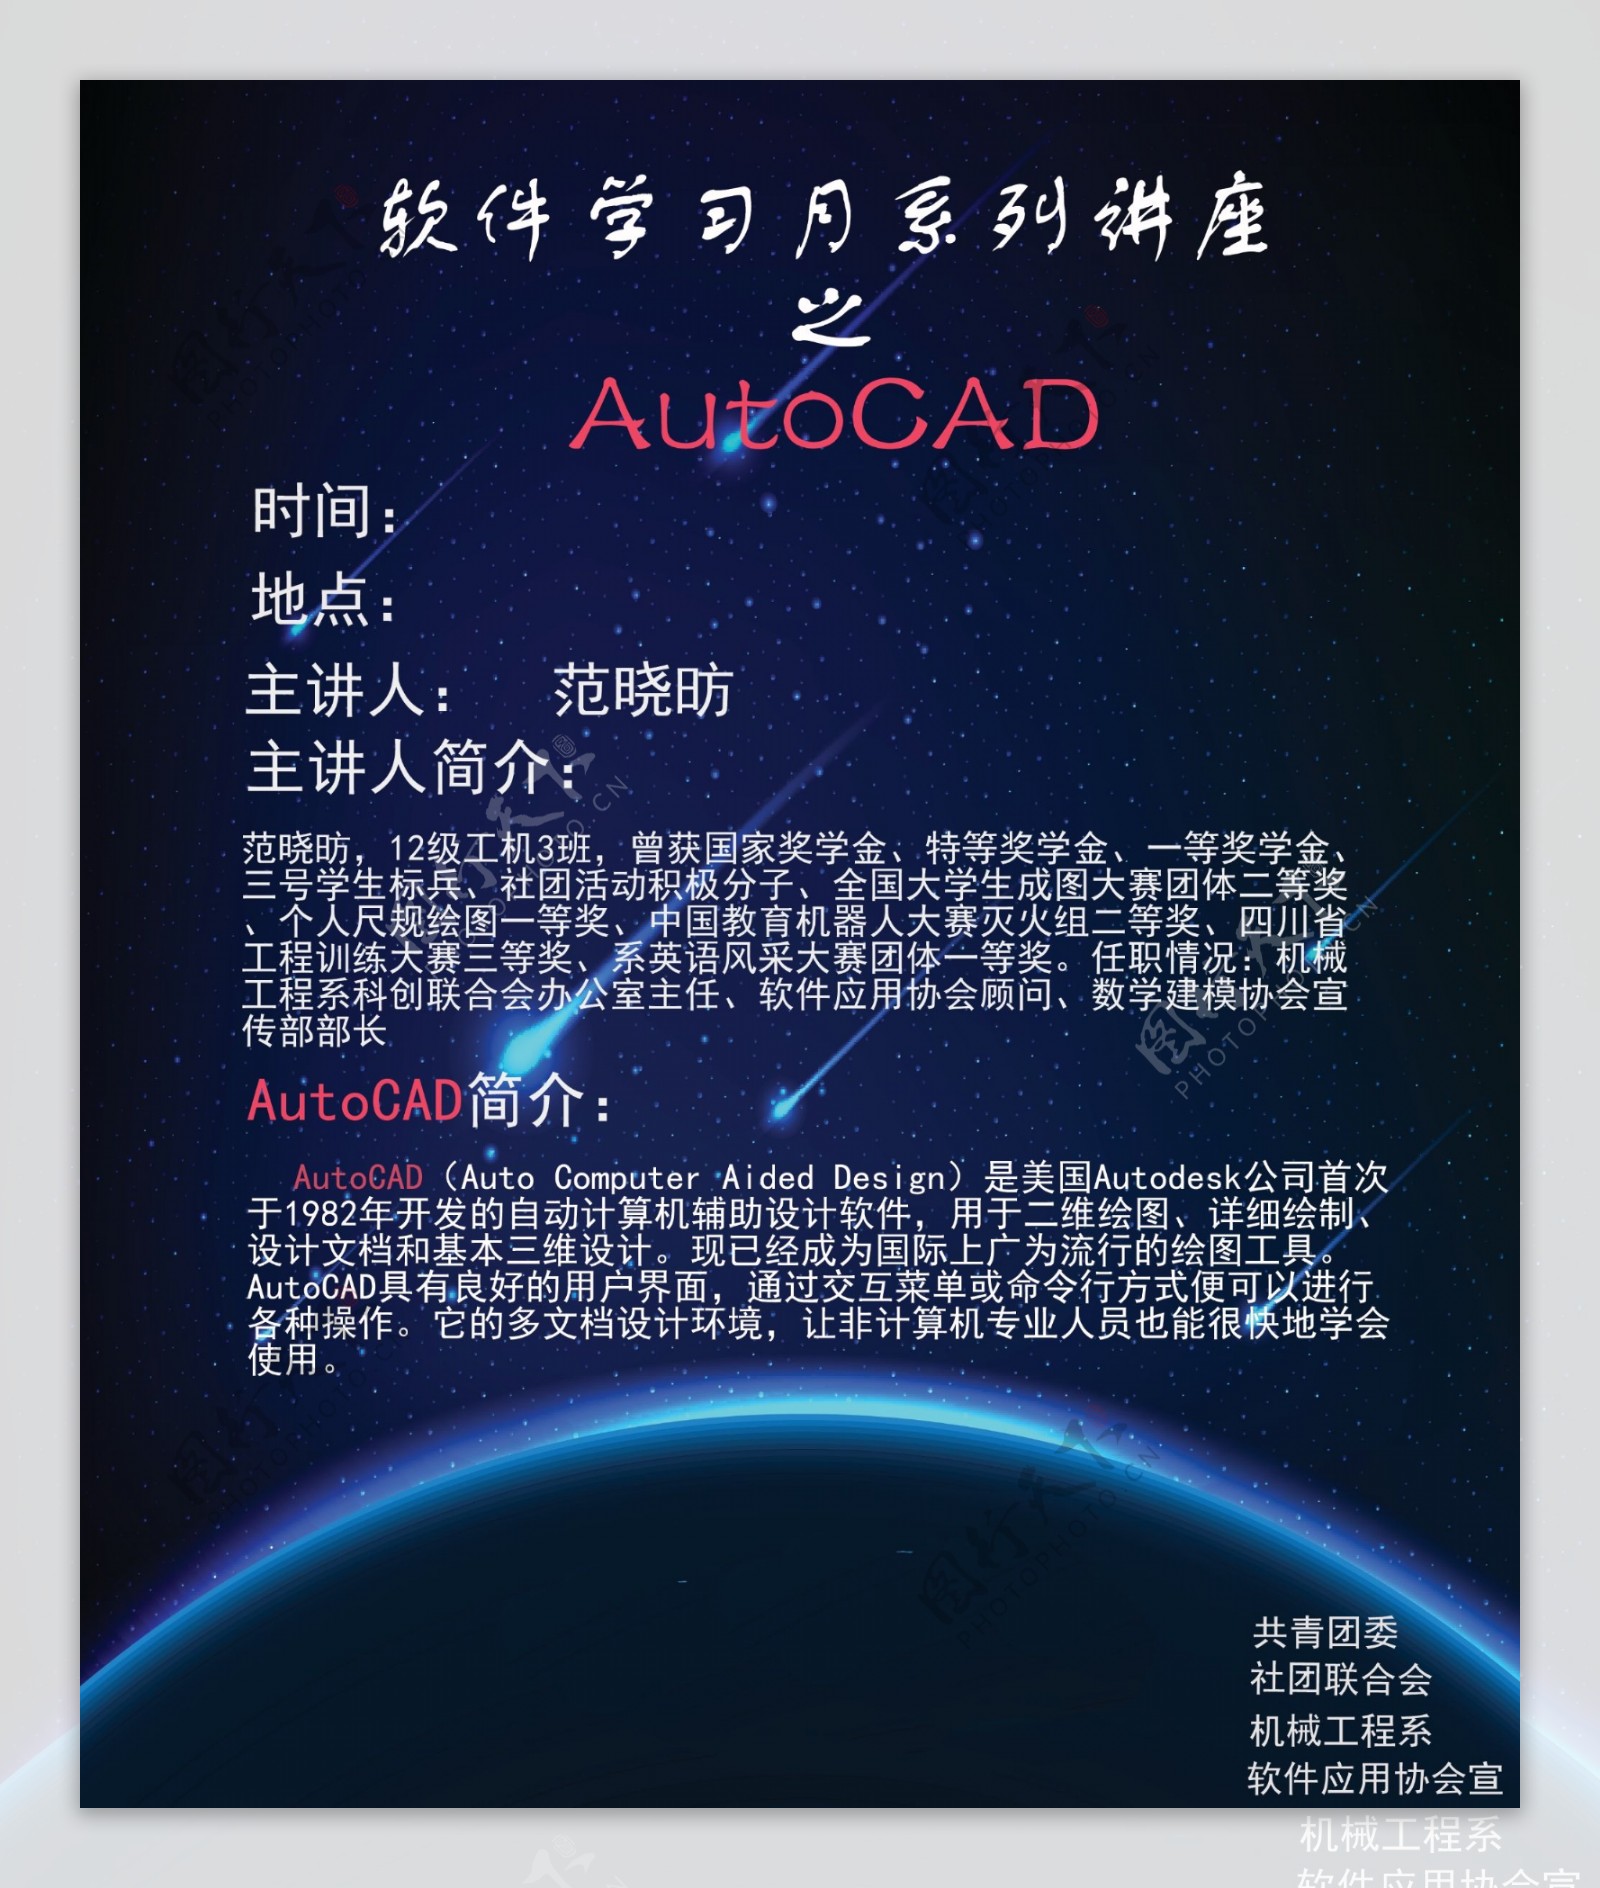 软件应用协会AutoCAD讲座